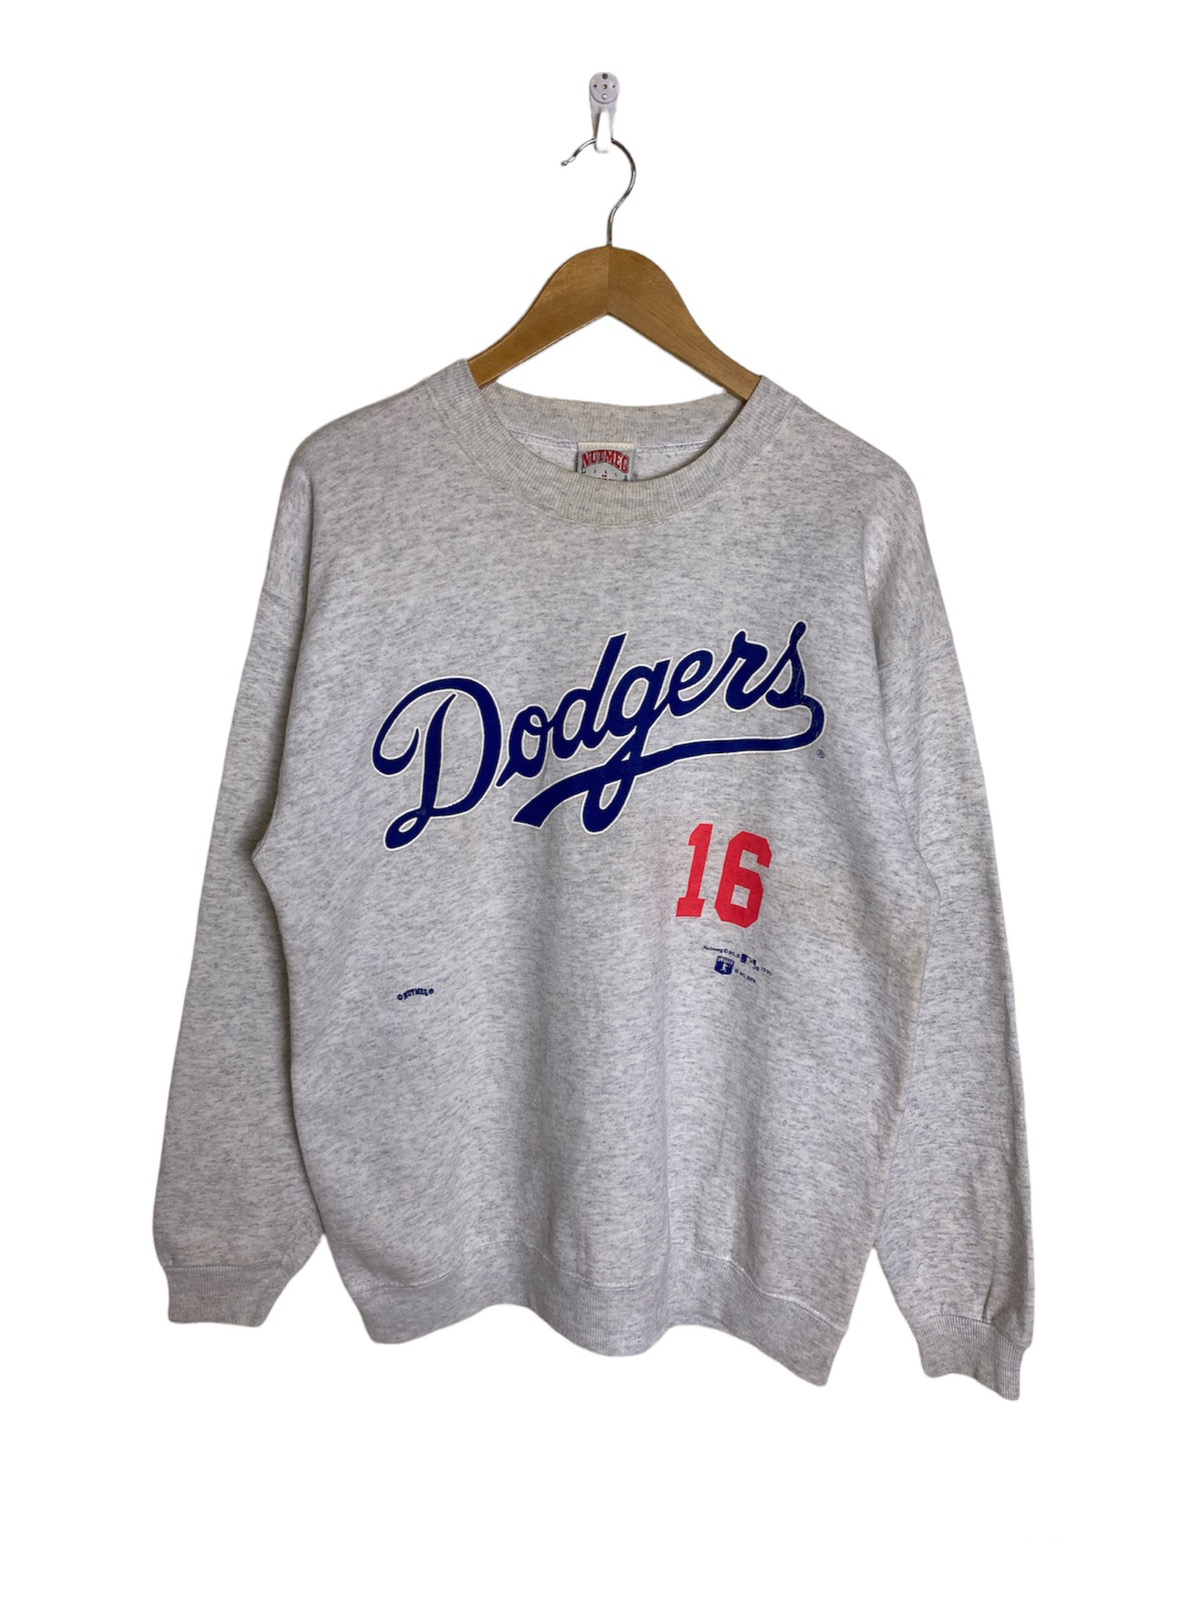 Vintage 1995 LA Dodgers 16 Nomo Sweatshirt Crewneck Made in 